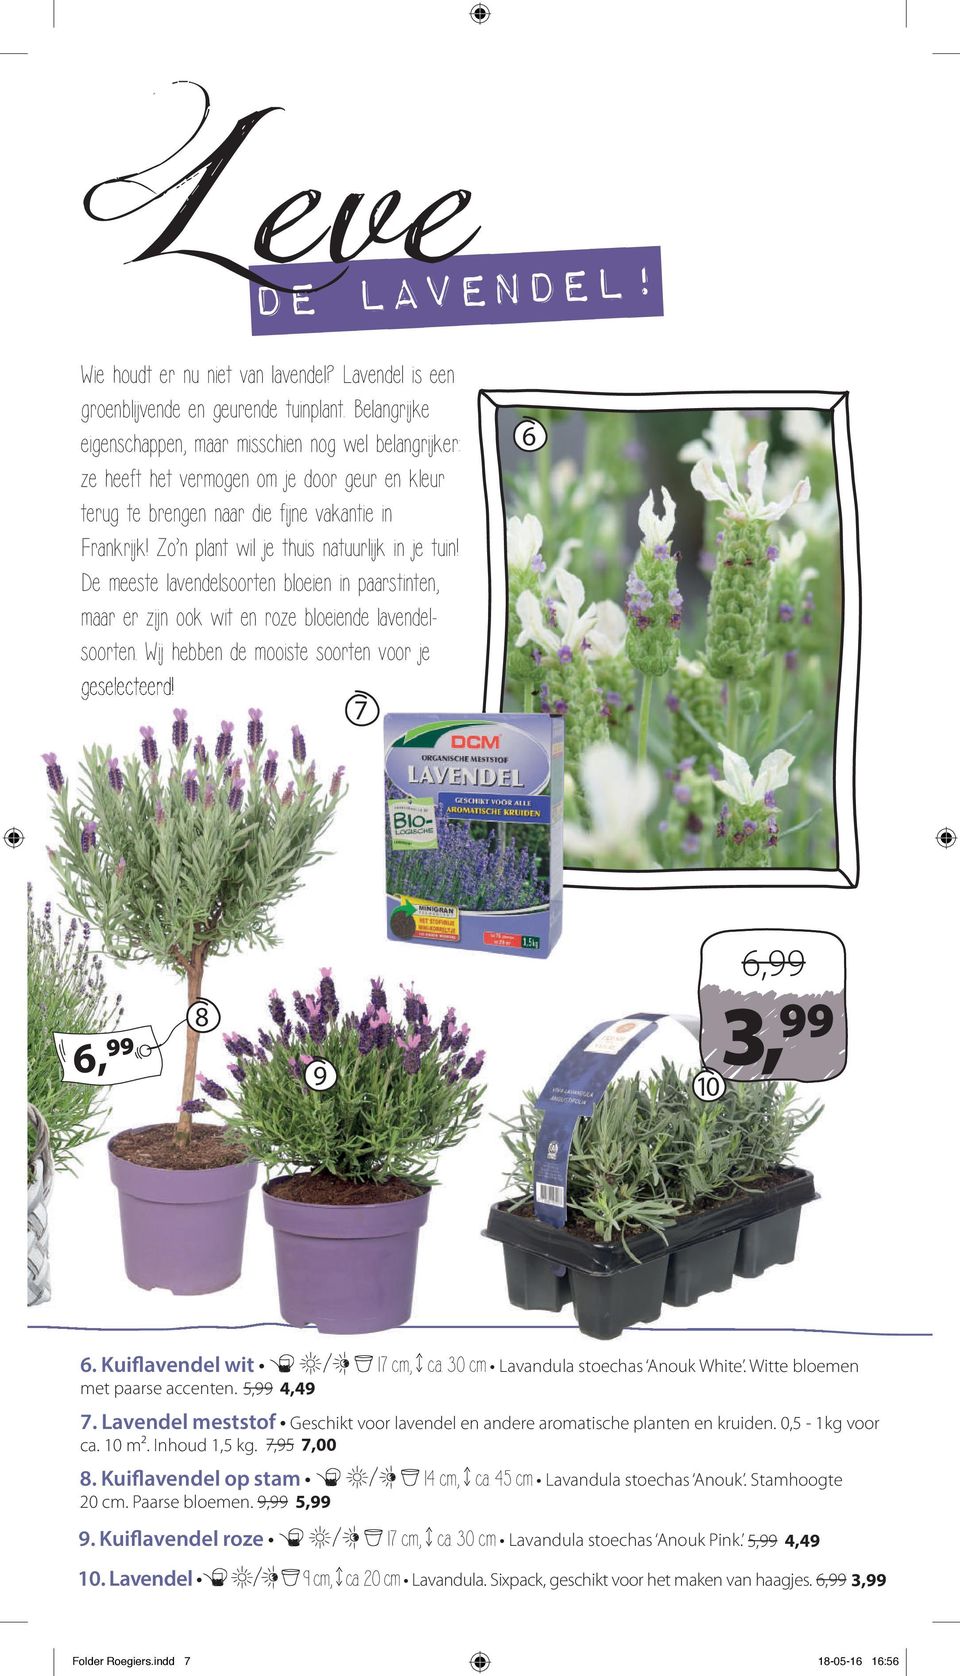 Zo n plant wil je thuis natuurlijk in je tuin! De meeste lavendelsoorten bloeien in paarstinten, maar er zijn ook wit en roze bloeiende lavendelsoorten.